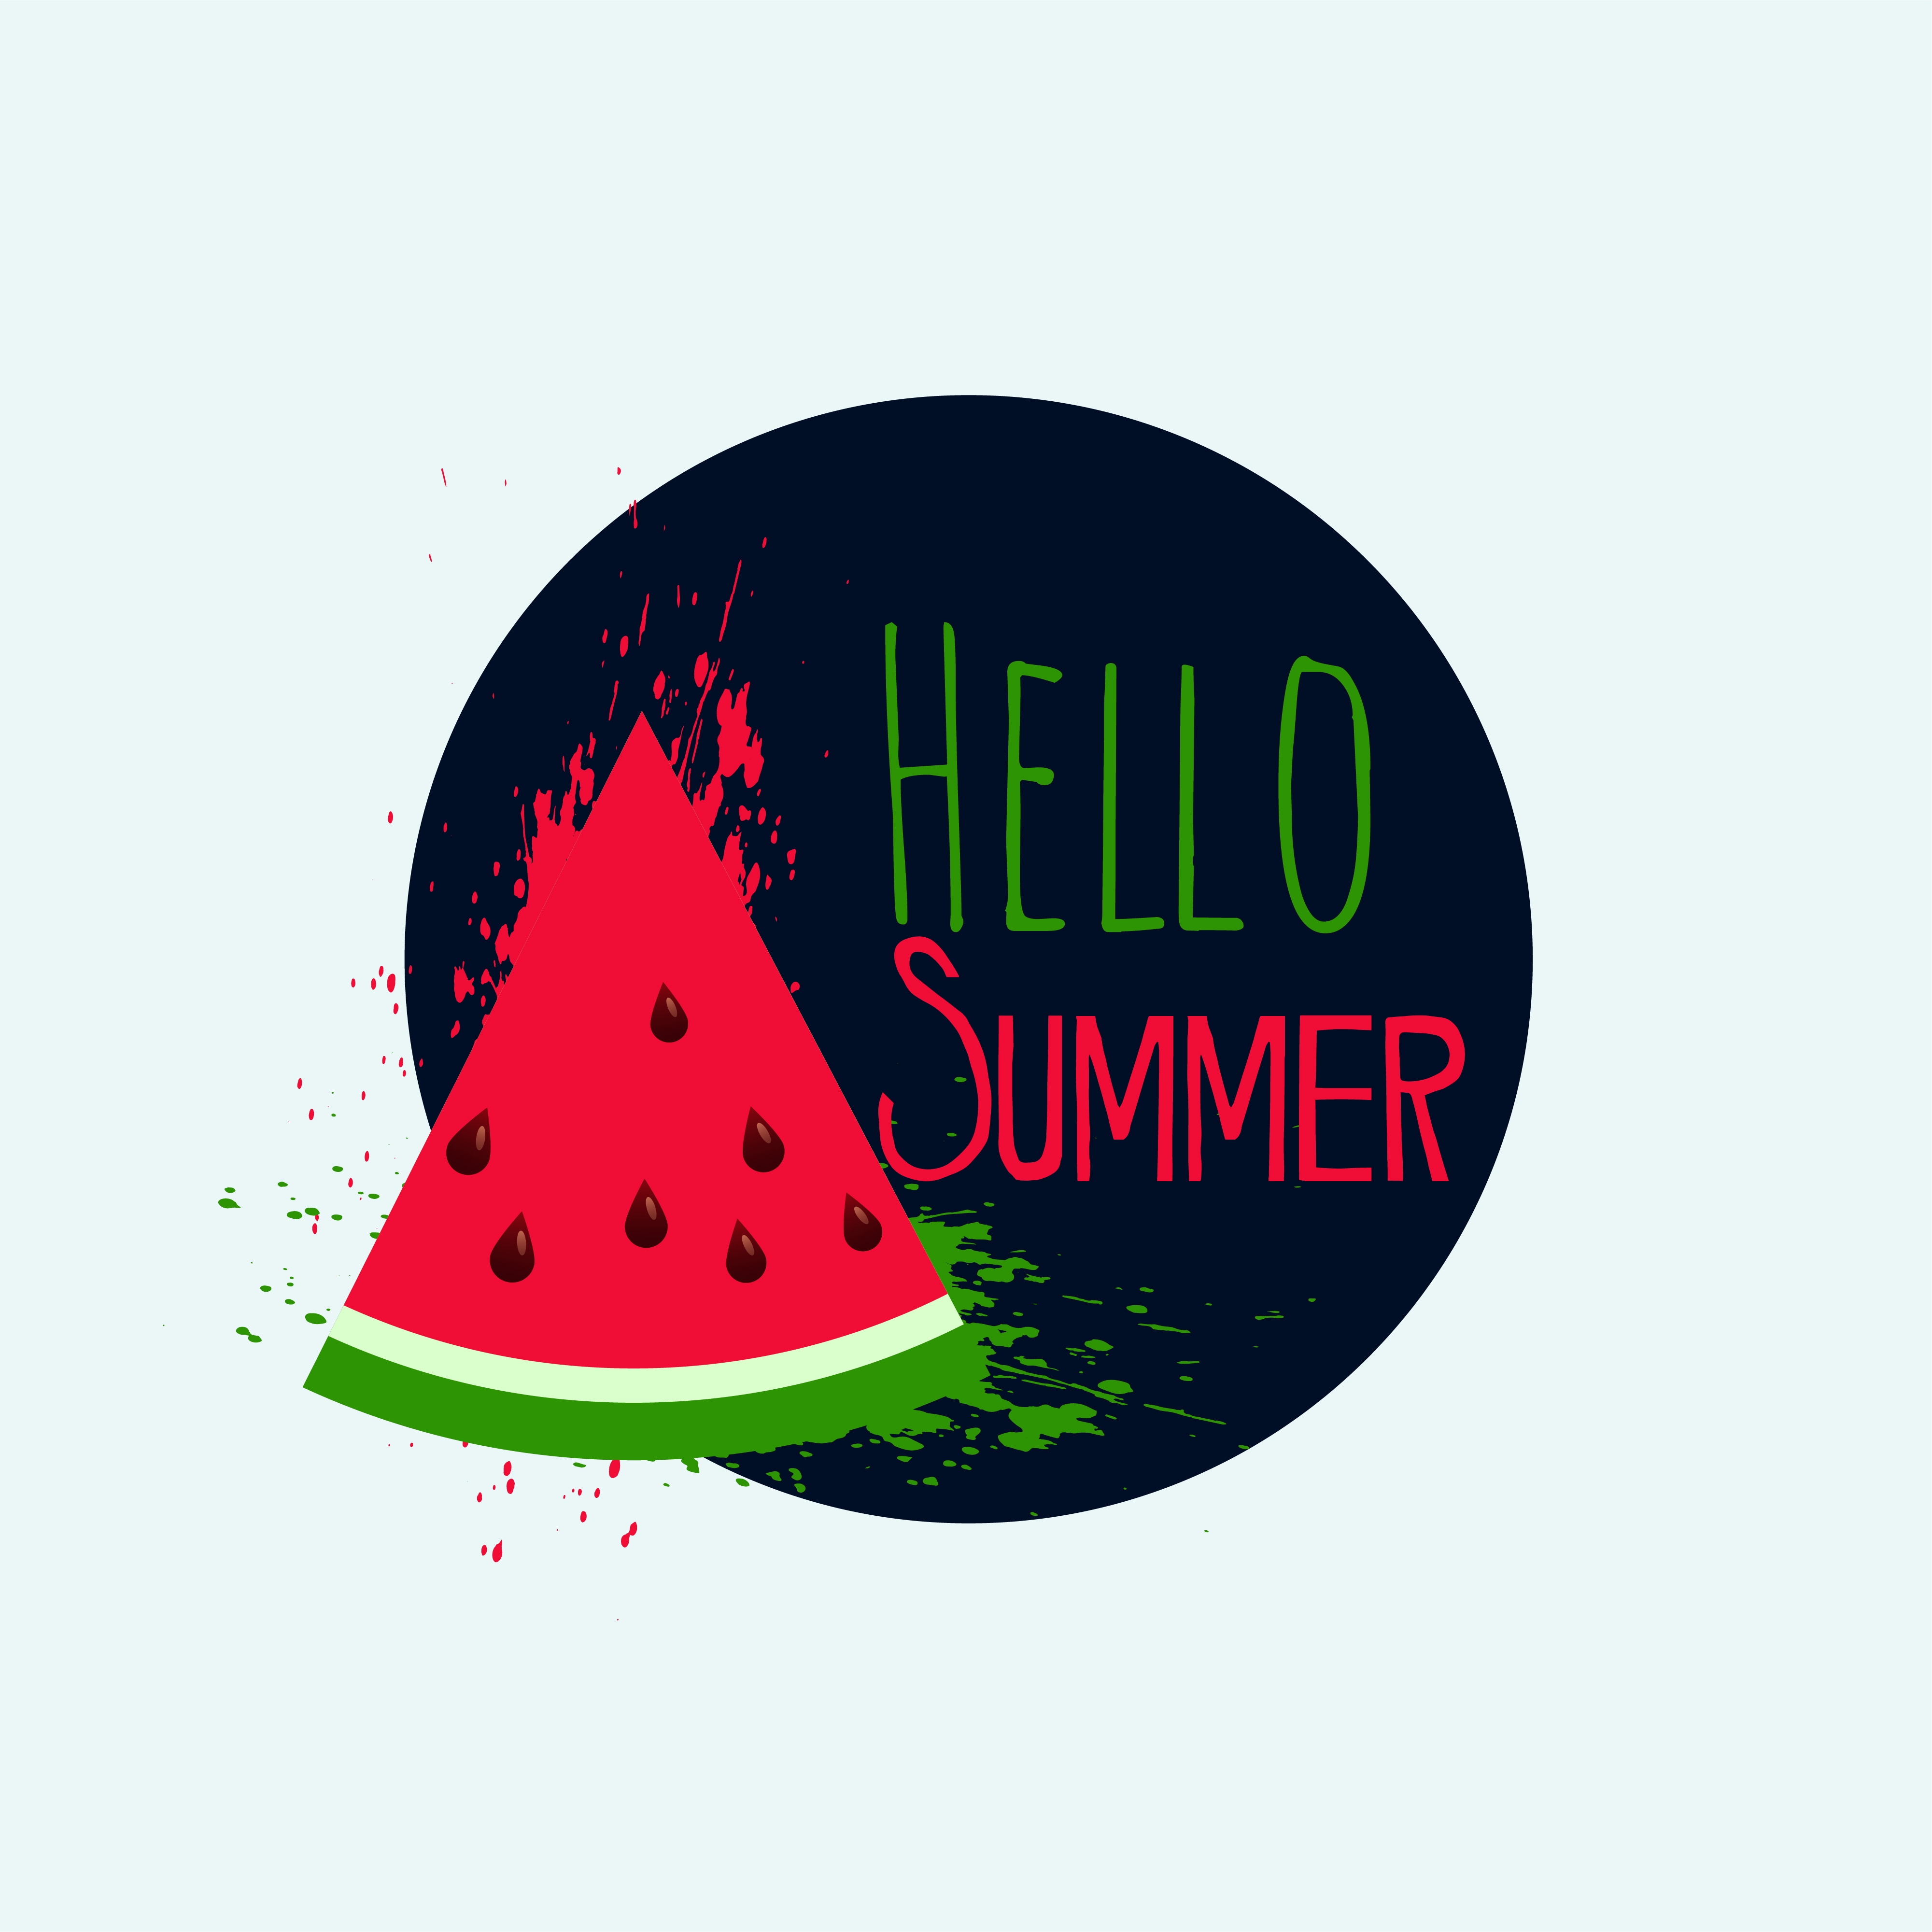 hello summer watermelon background design - Download Free ...